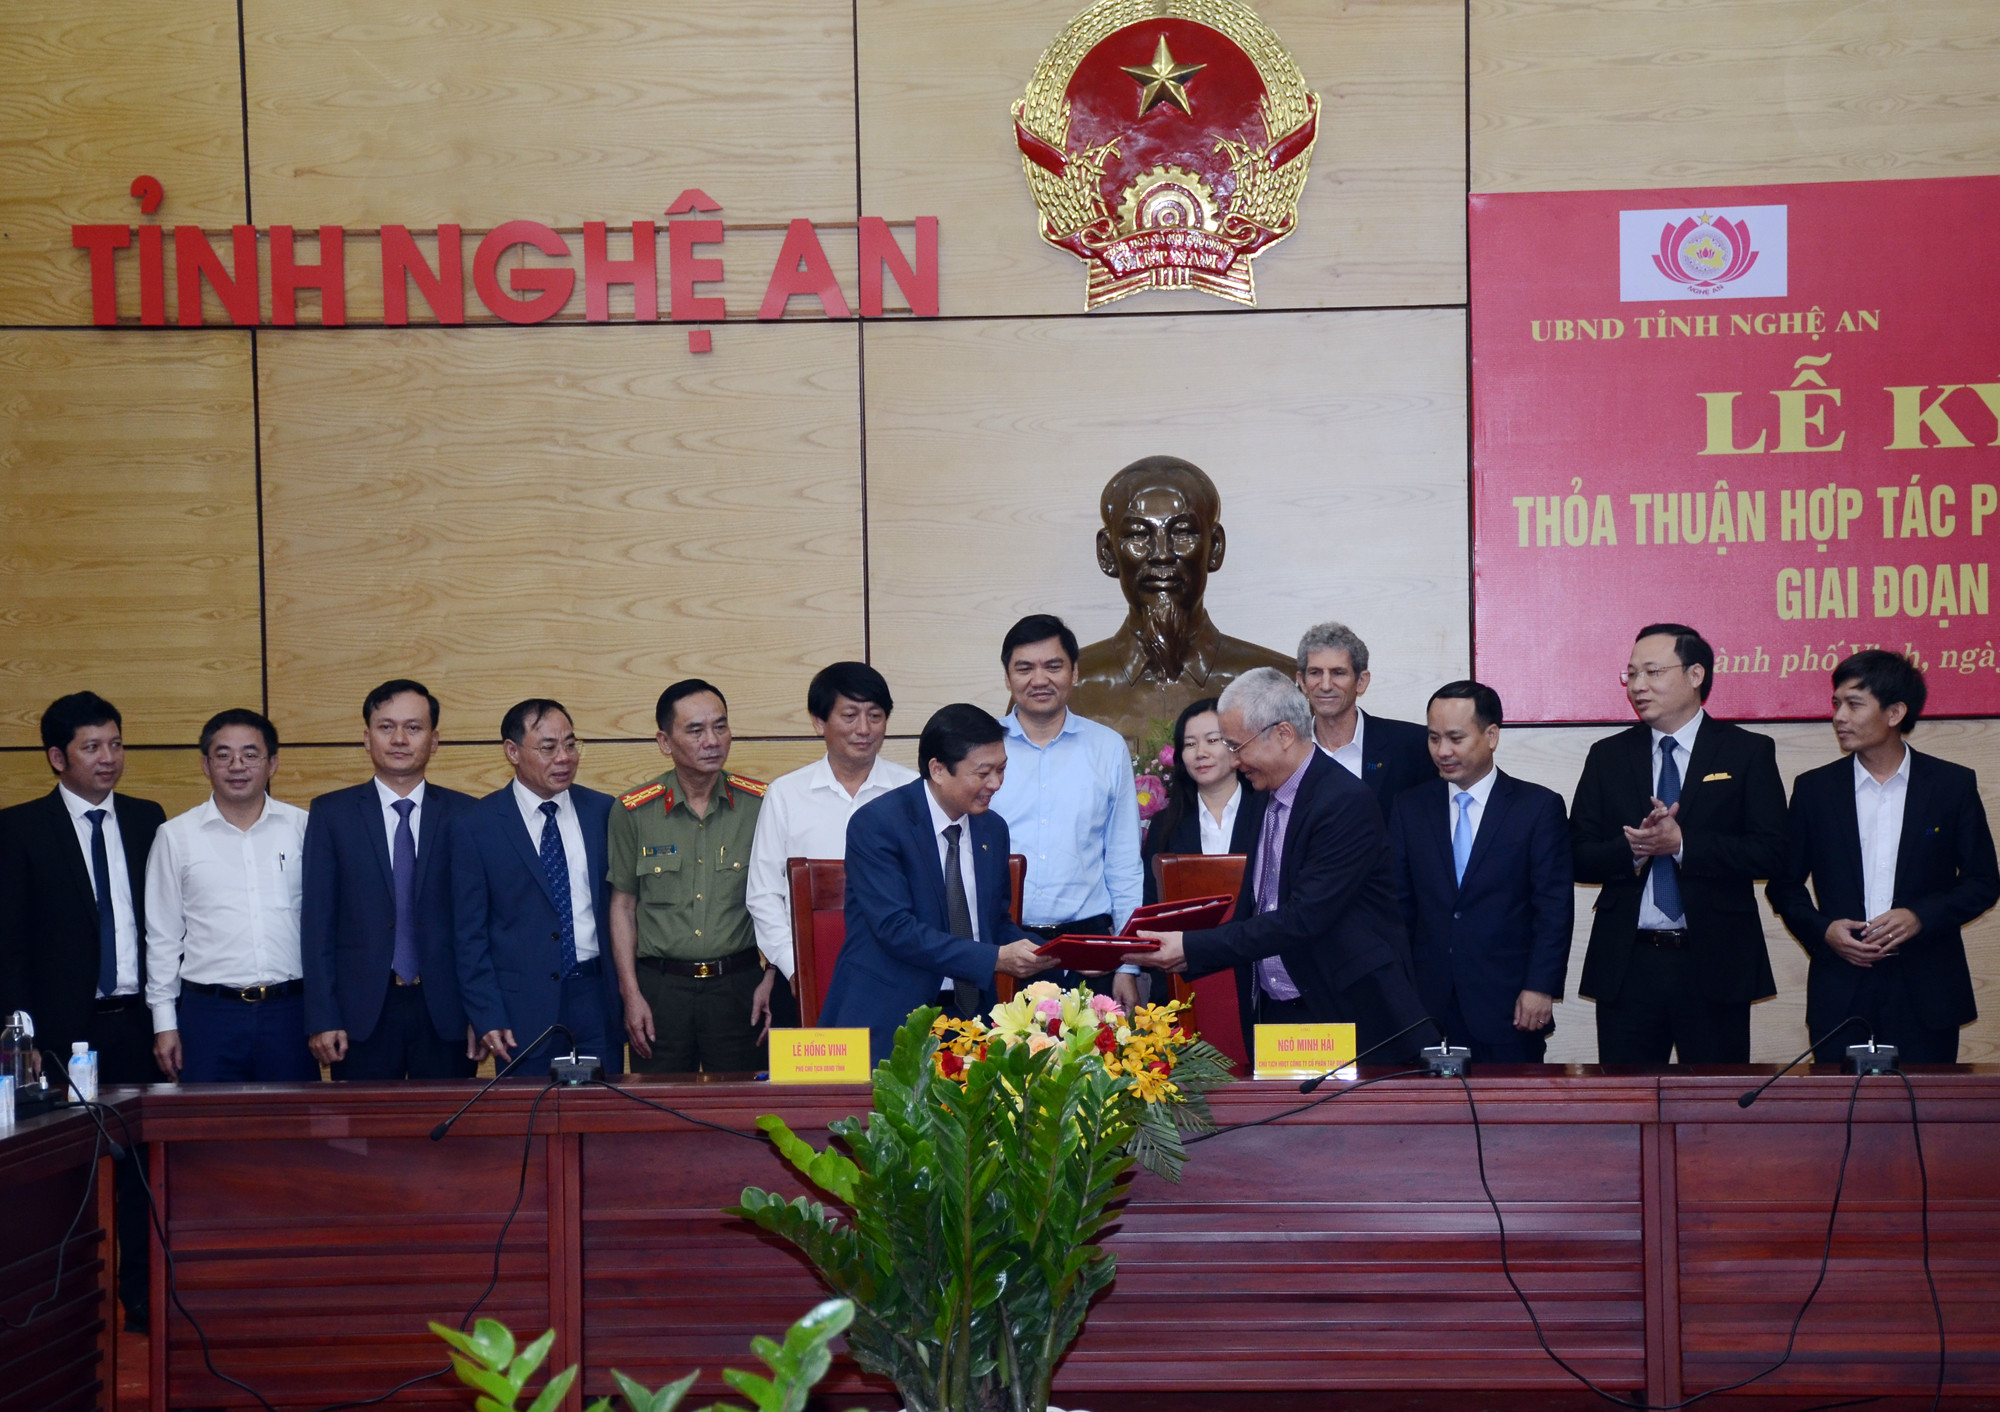 UBND tỉnh Nghệ An và Công ty Cổ phần Tập đoàn TH ký kết thỏa thuận hợp tác phát triển du lịch xanh. Ảnh: Thành Chung